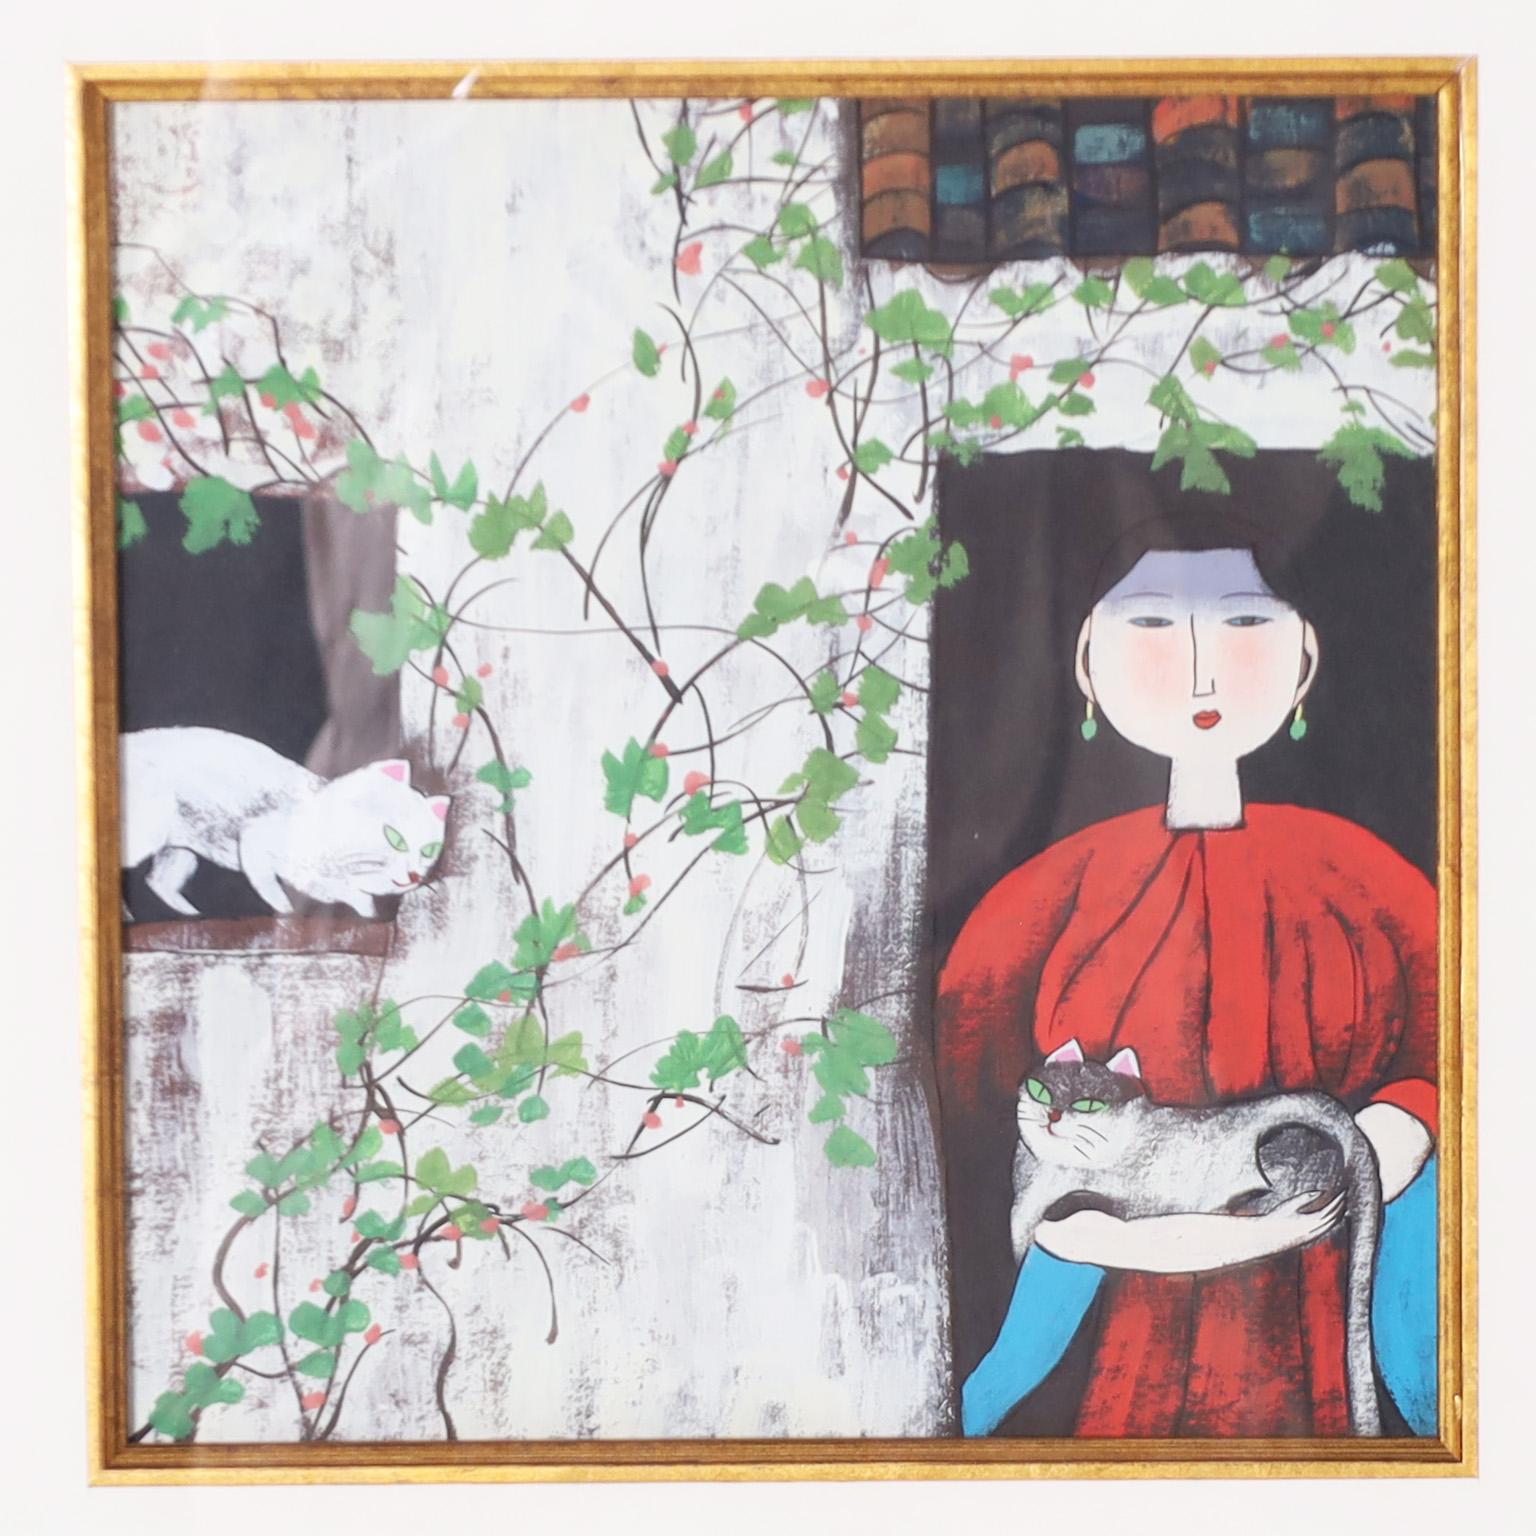 Intrigante paire de peintures chinoises modernes exécutées à la gouache sur papier dans un style asiatique naïf et coloré caractéristique, représentant des femmes avec des chats dans un jardin. Tous deux sont présentés dans un cadre commun en bois